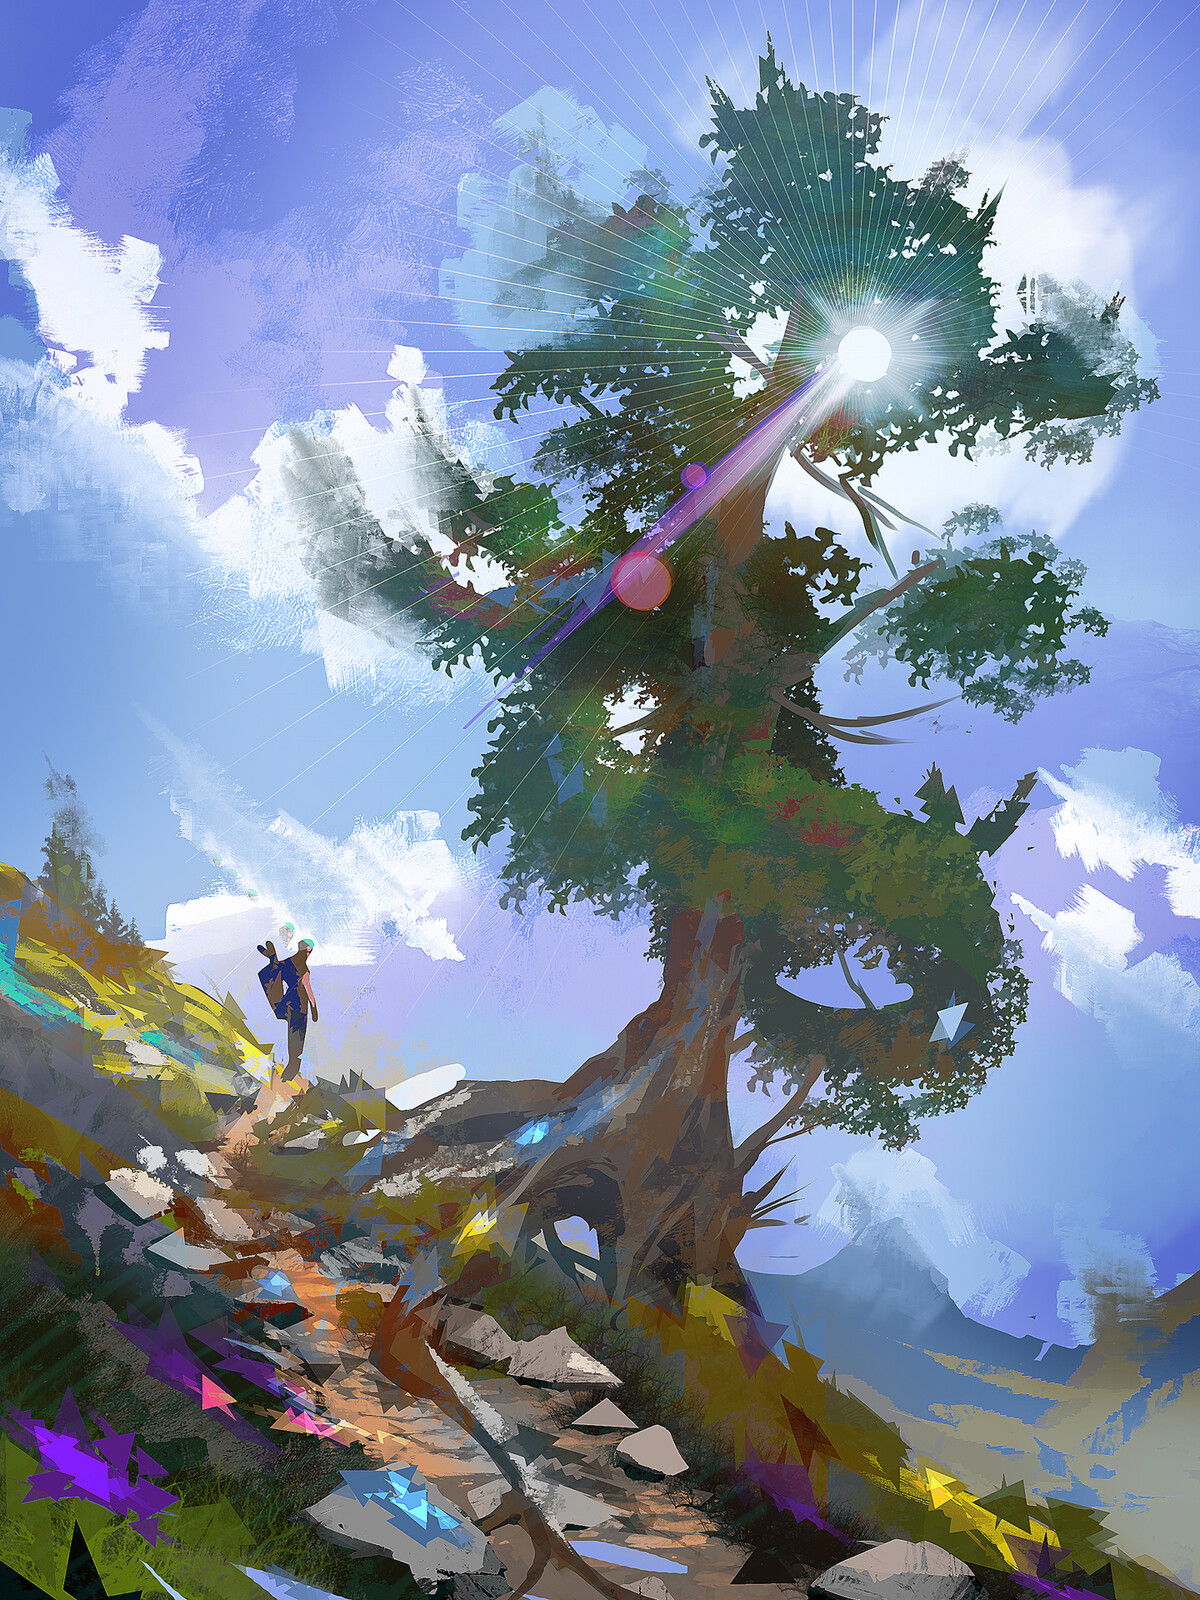 TIMELAPSE: Mountain trip, the Tree